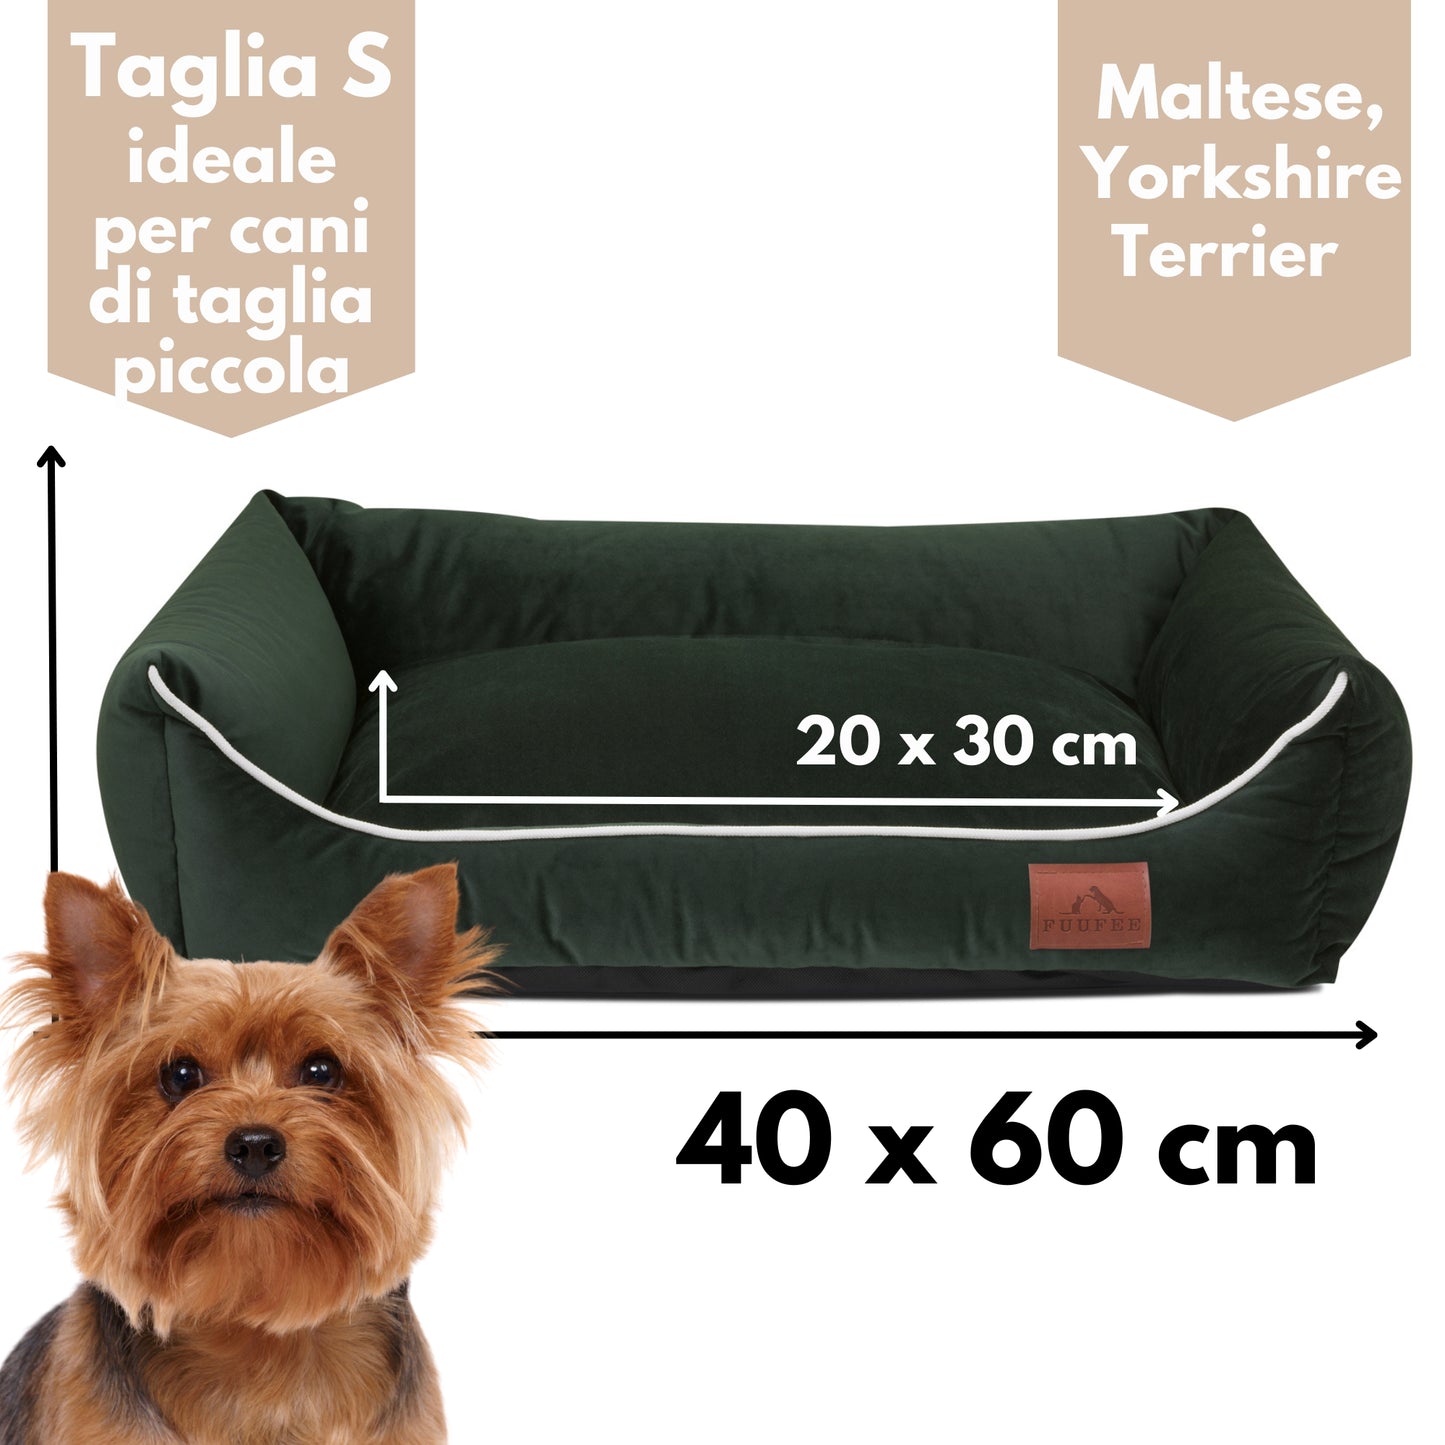 Divano/Letto/Cuccia sfoderabile per cani di taglia piccola, taglia media, taglia grande e taglia gigante.